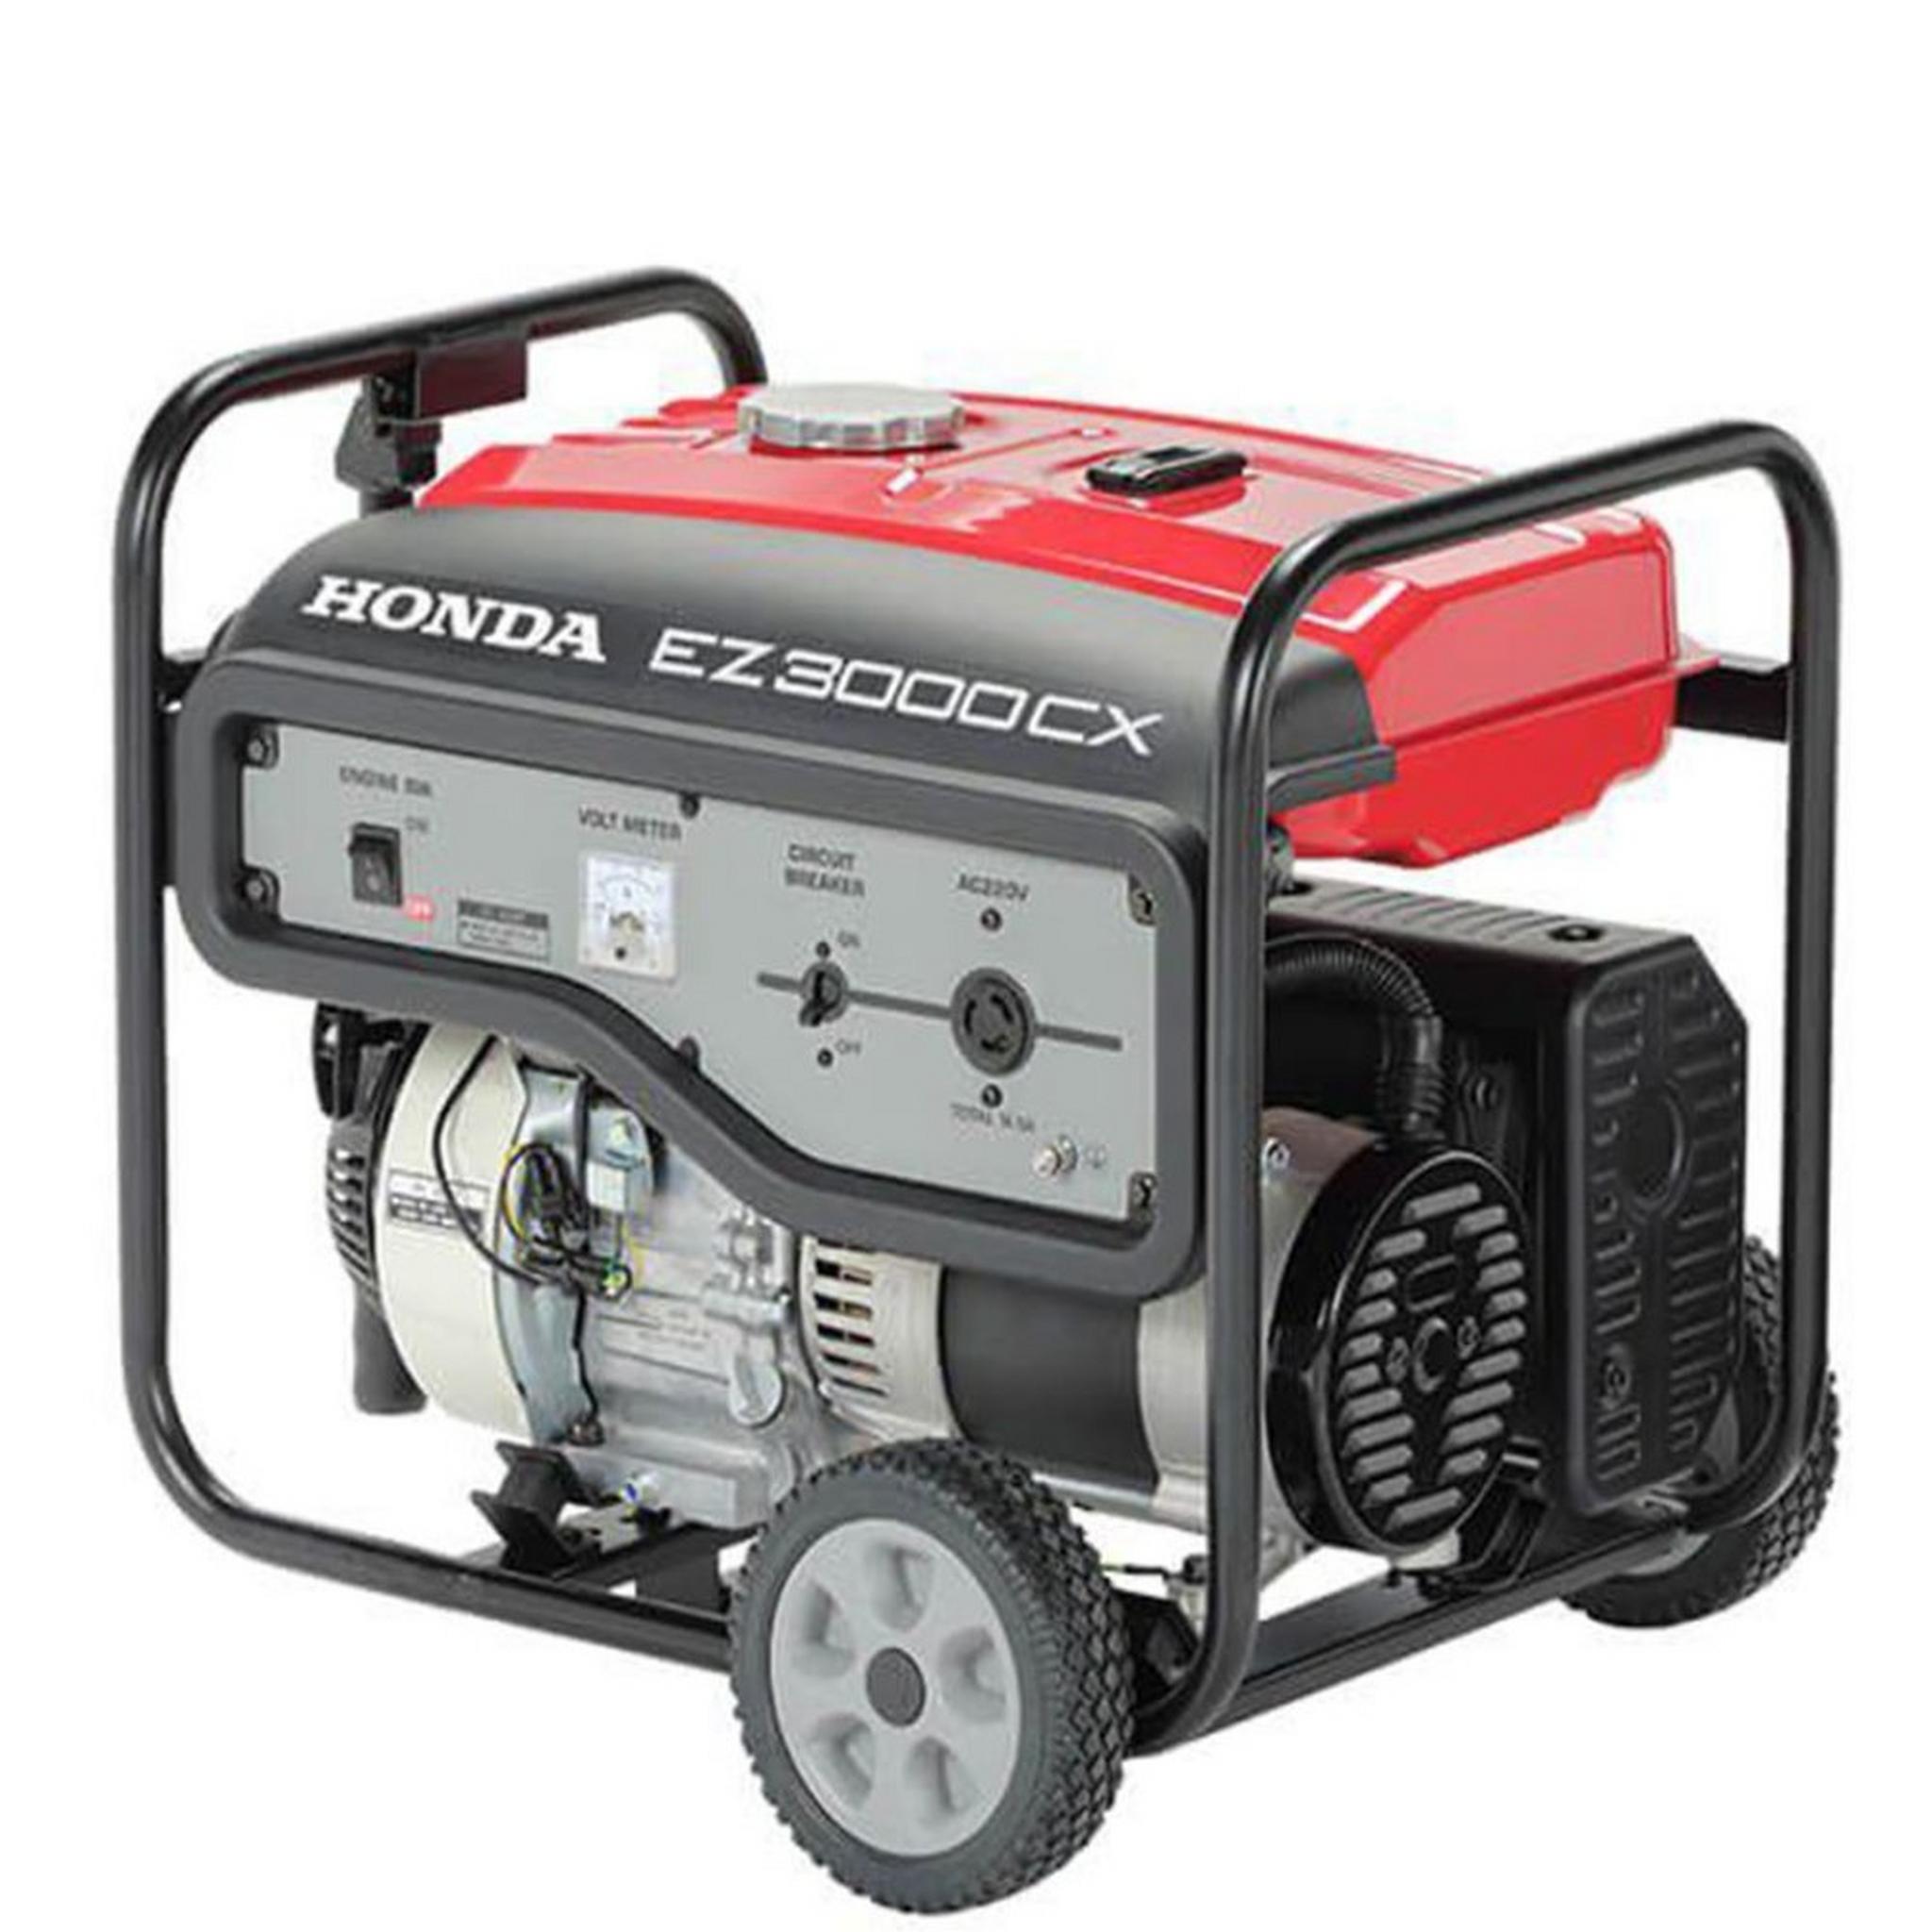 Honda Generator EZ3000CX - 13L